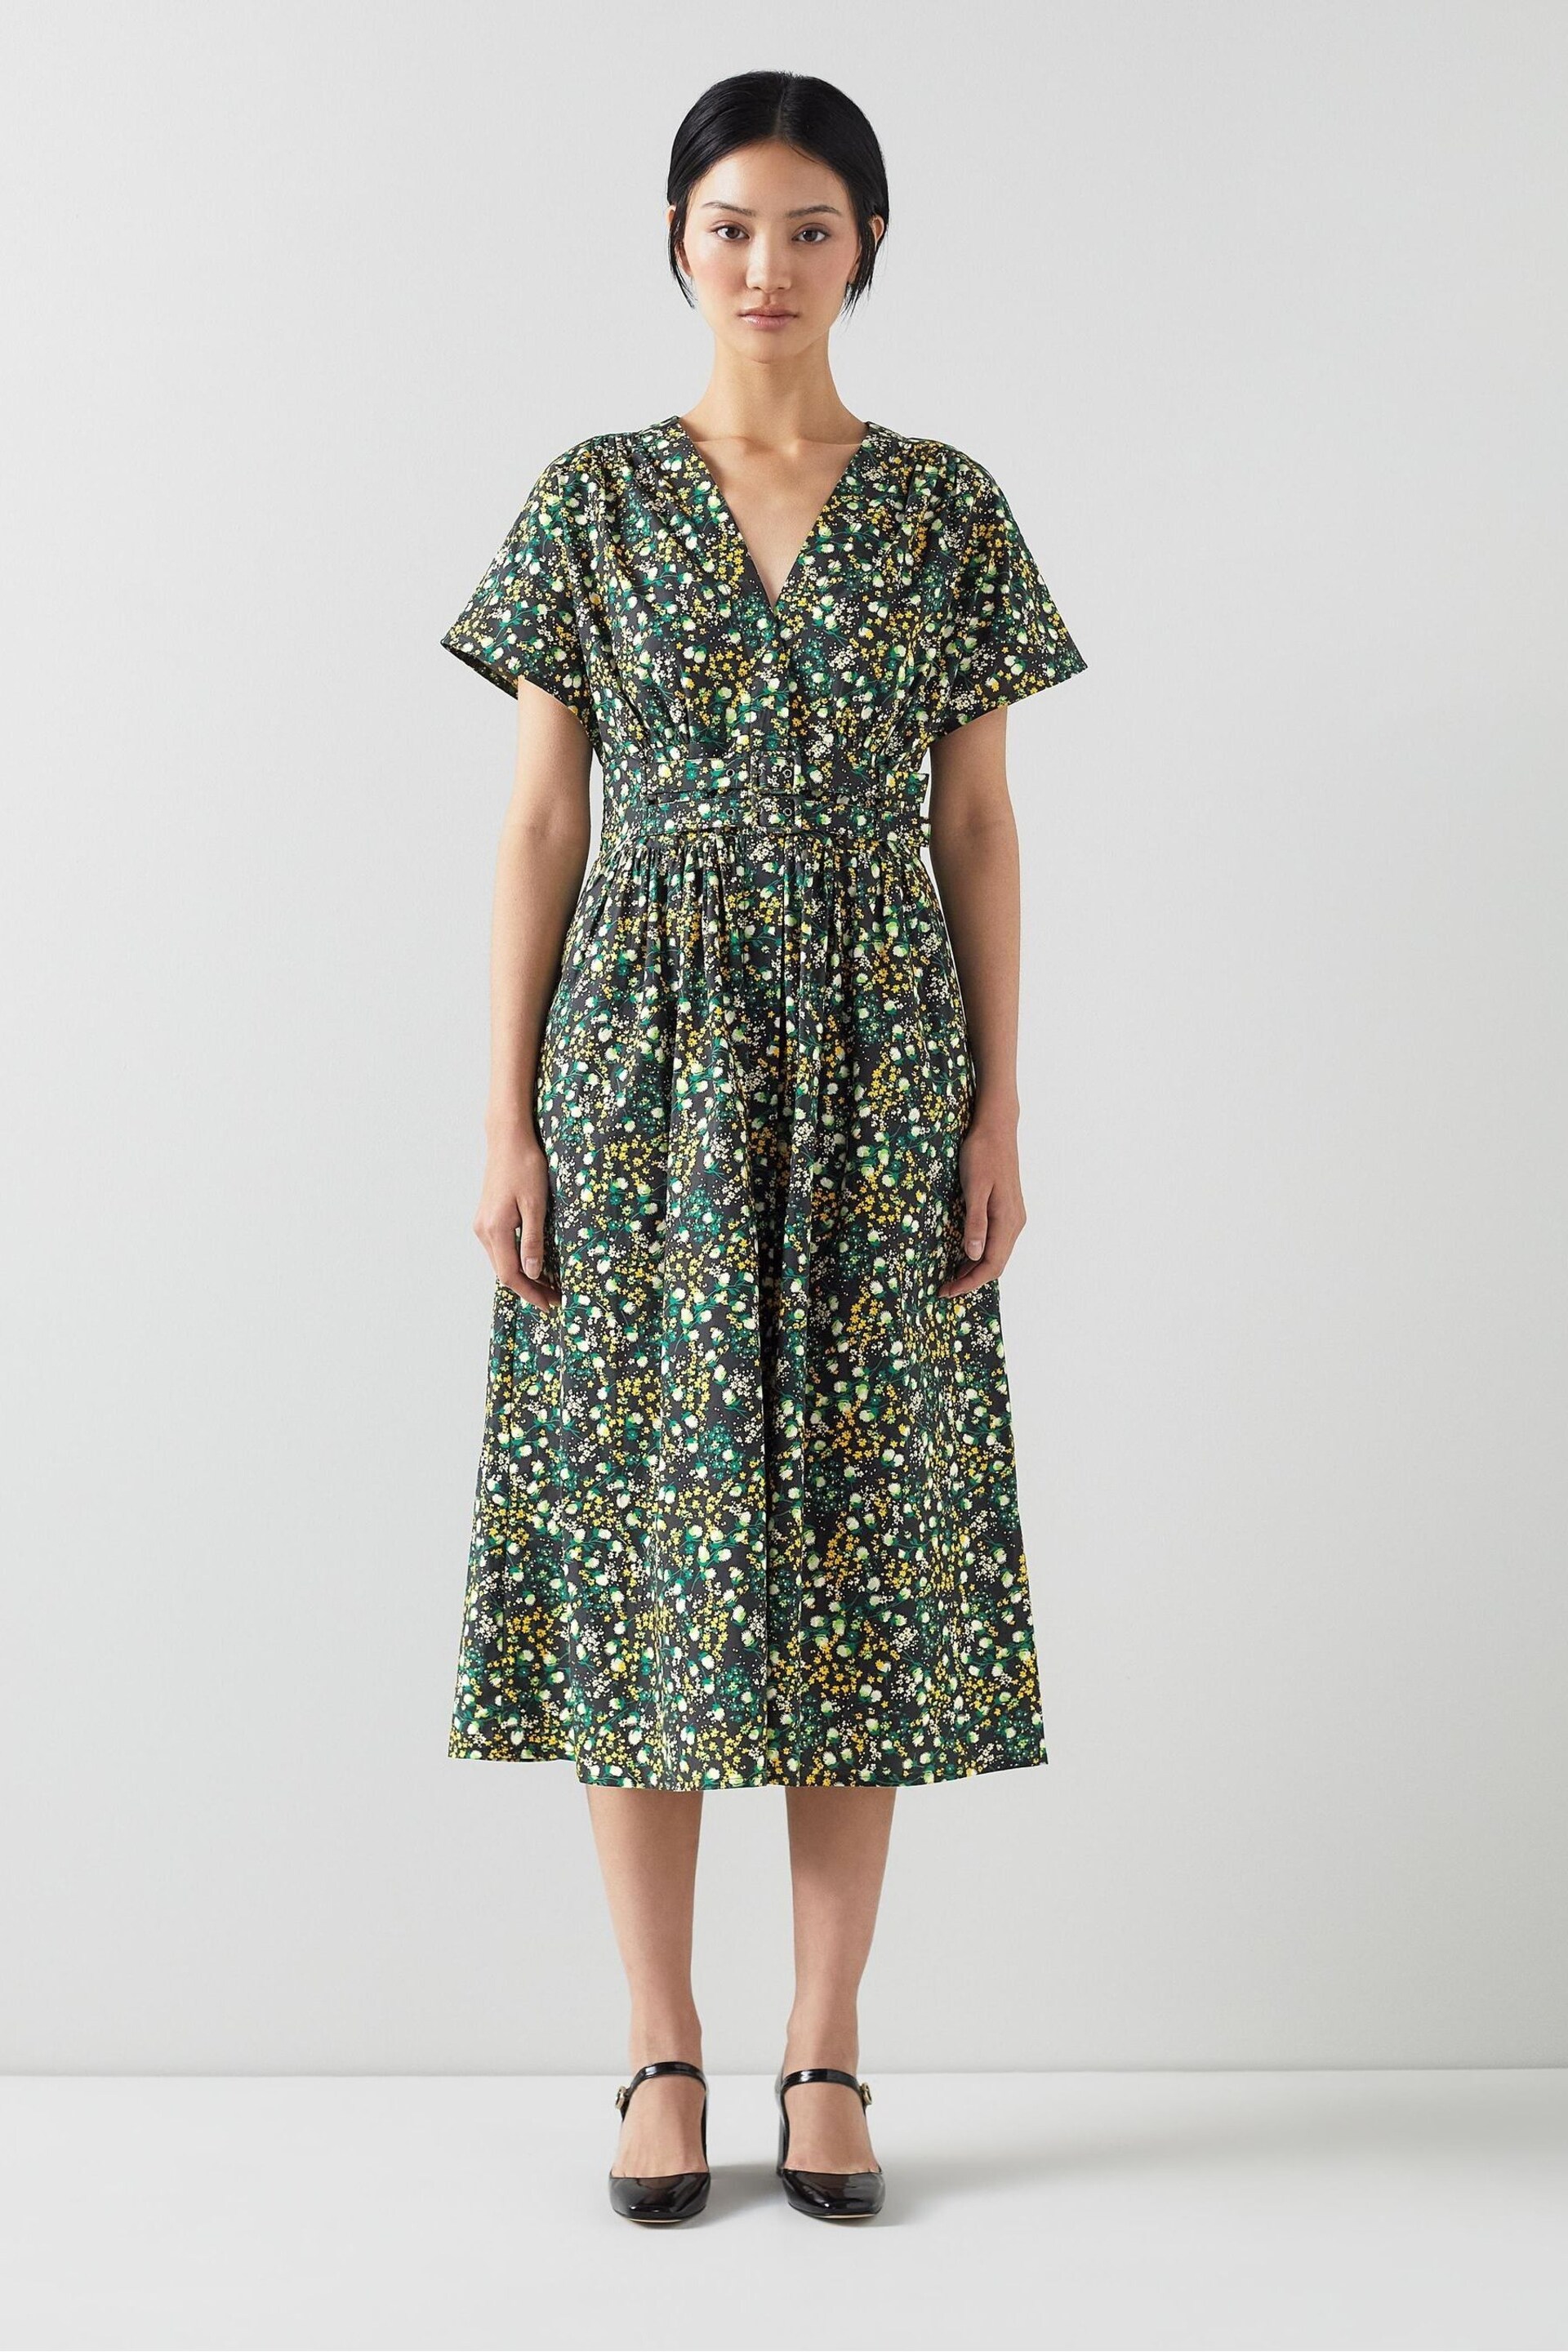 LK Bennett Eva Cotton Buttercup Meadow Print Dress - Image 1 of 3